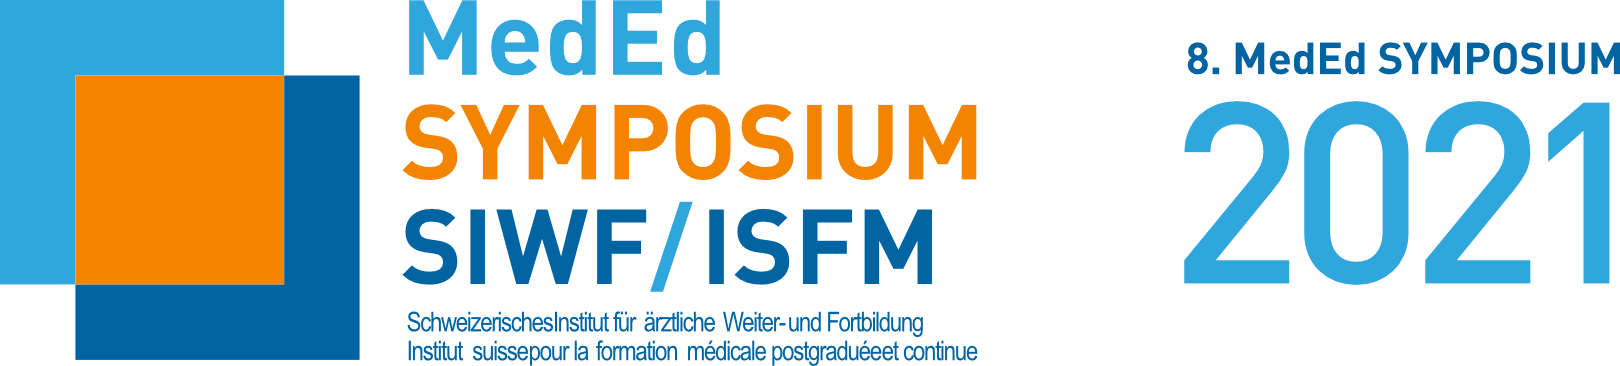 8. MedEd Symposium SIWF/ISFM